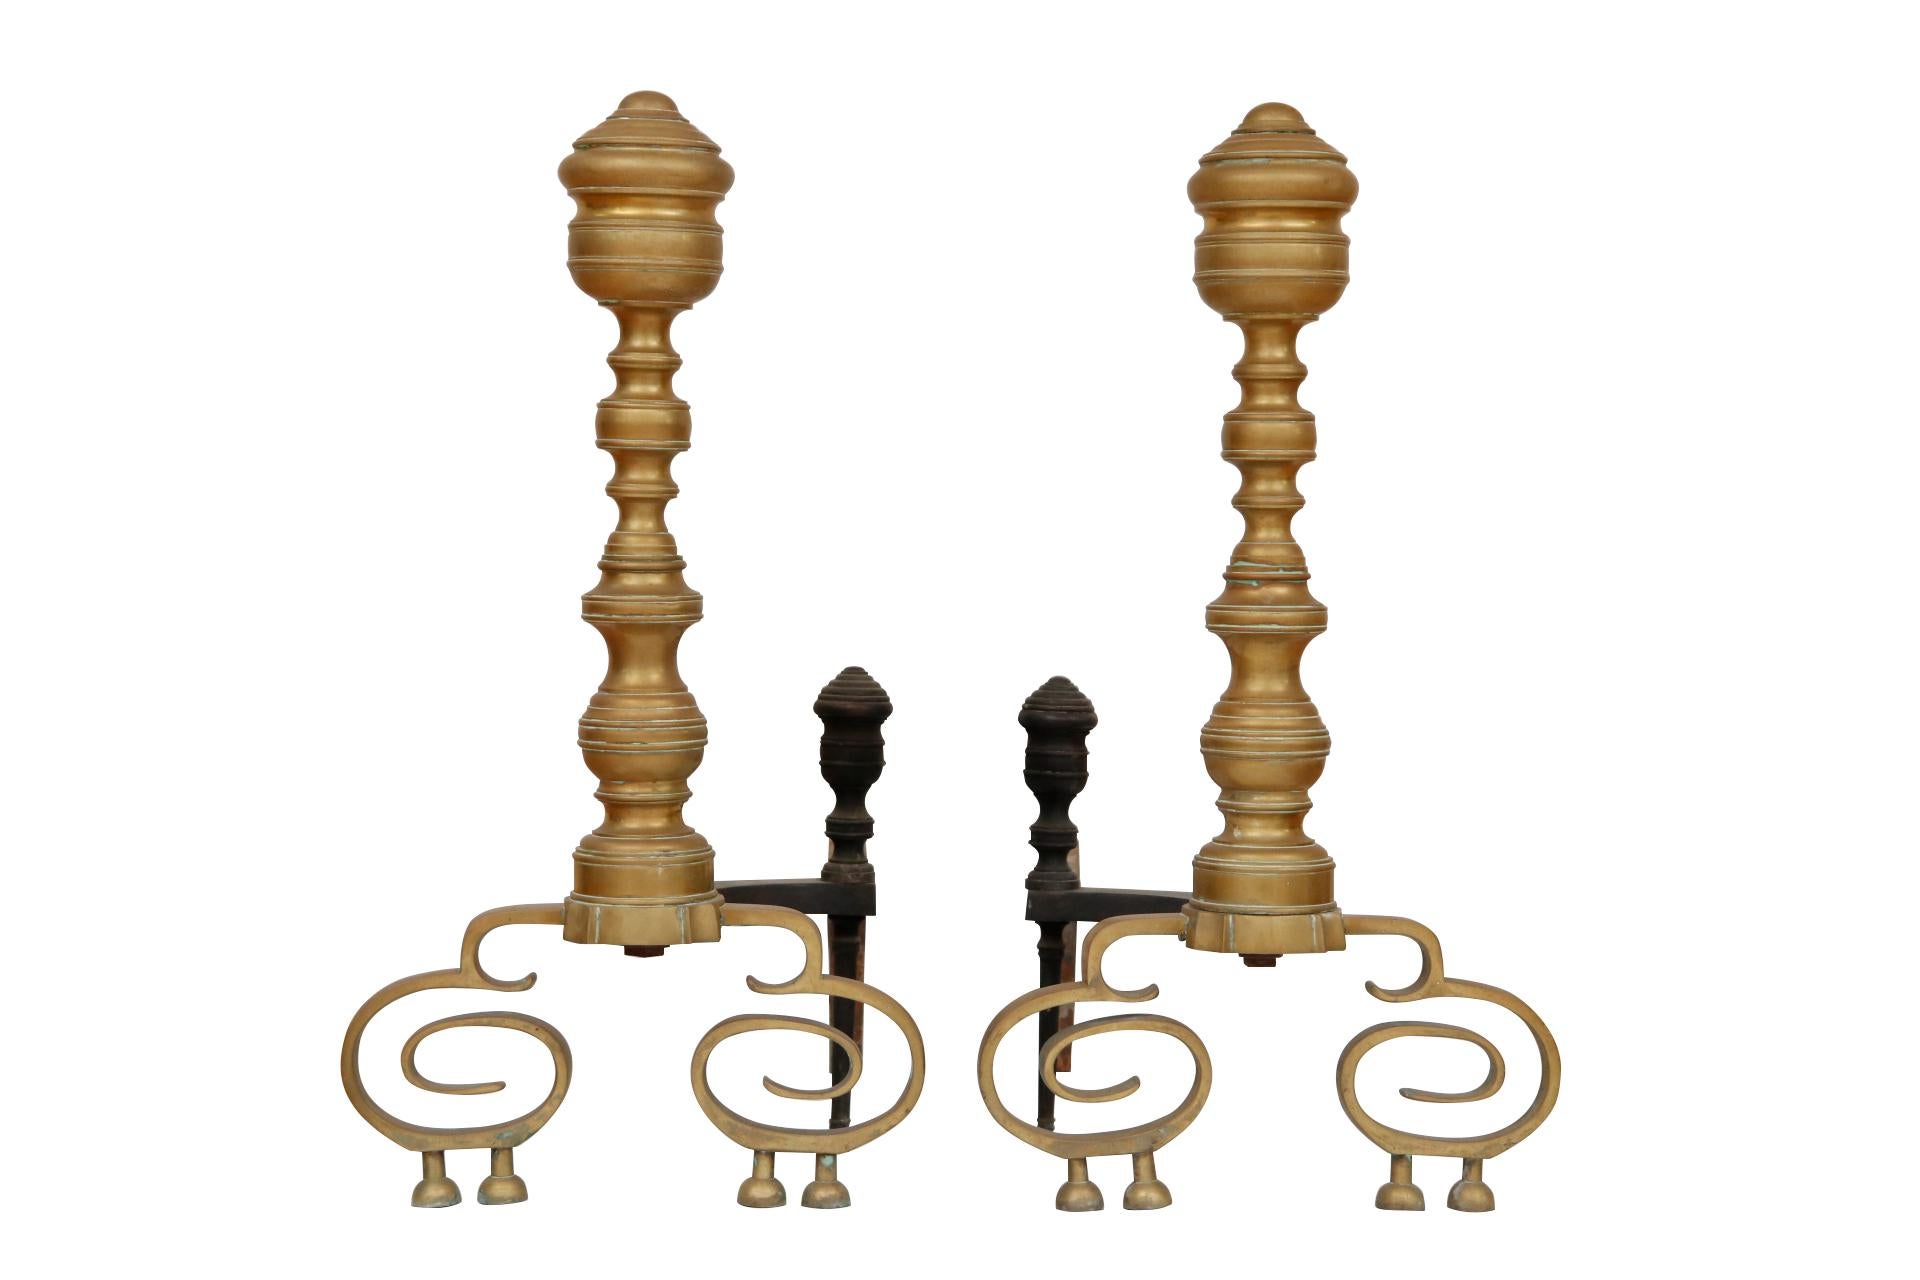 Une paire de chenets en laiton de style Empire américain vers 1830. Les colonnes sont moulées pour donner l'aspect de balustres tournés avec de grands fleurons en forme d'urne. Des arrêts de rondins assortis décorent les pieds de chien en fer forgé.